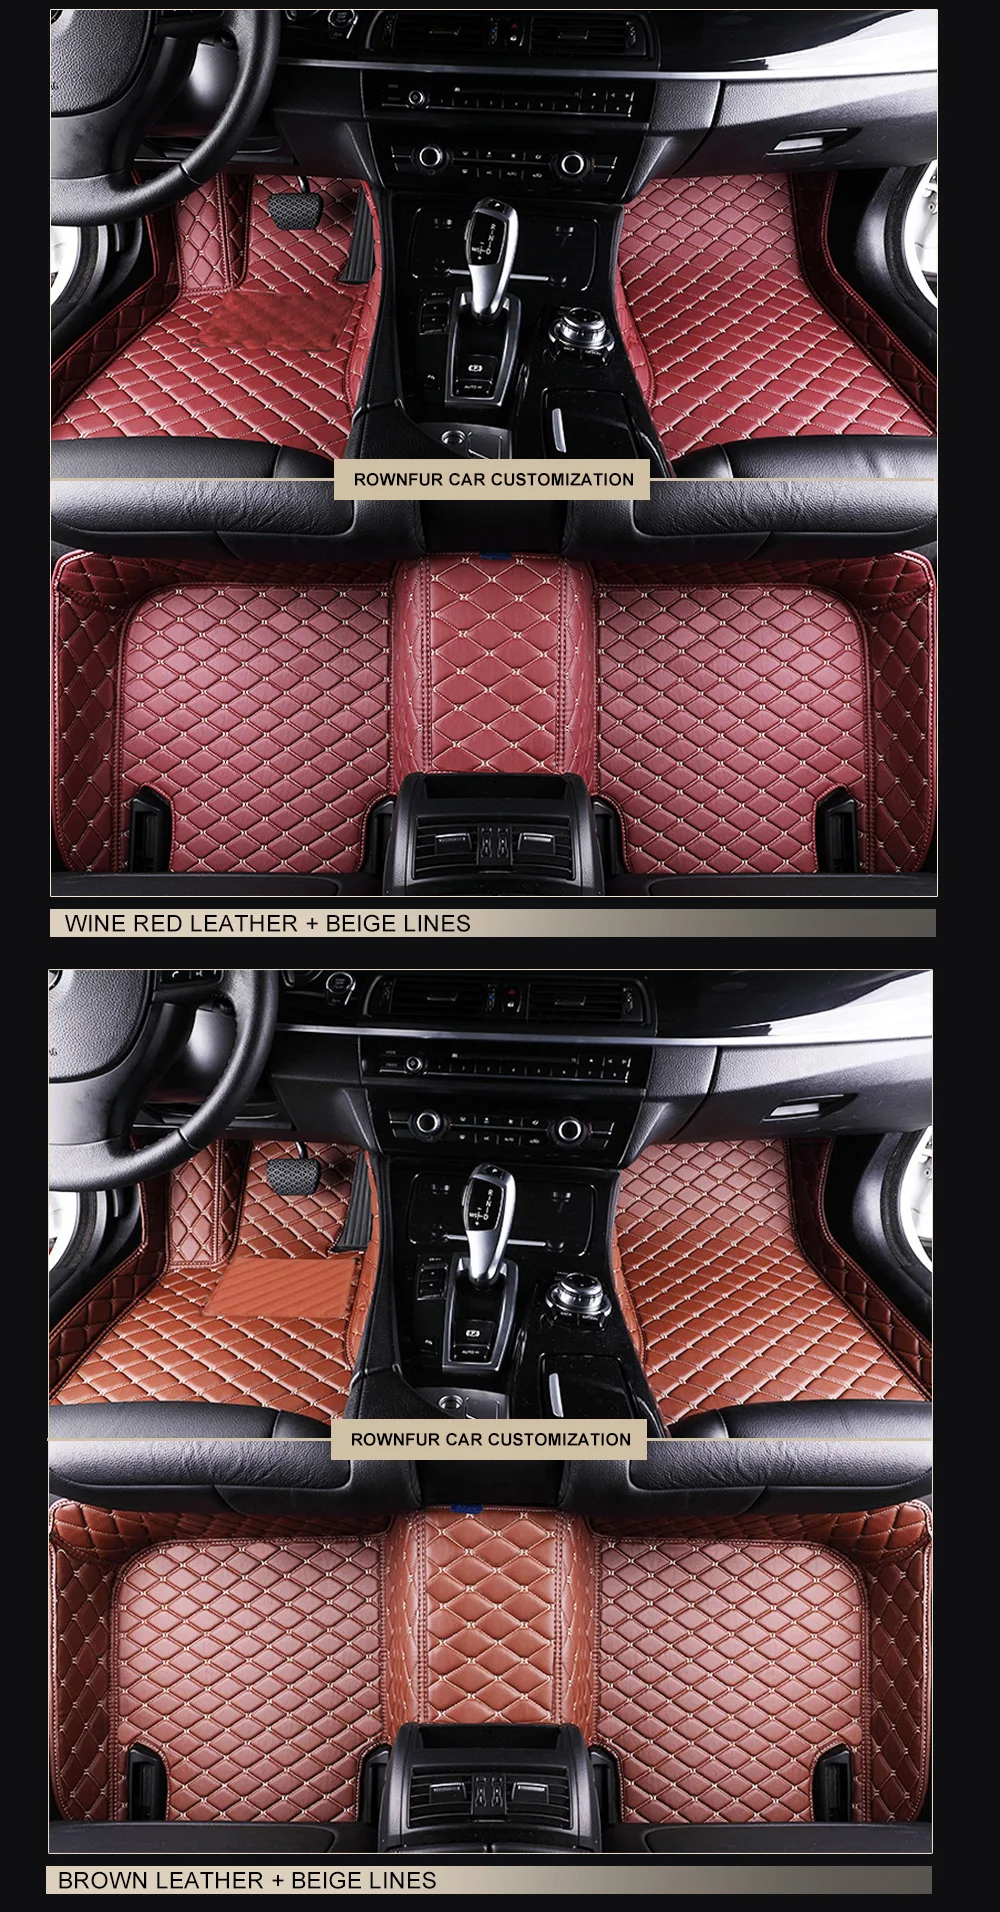 AUTOROWN автомобильные коврики для Toyota Hilux VII, VII рестайлинг, VIII 2001- года, Водонепроницаемые 3Д коврики из эко-кожи в салон машины Аксессуары для интерьера авто 7 цветов